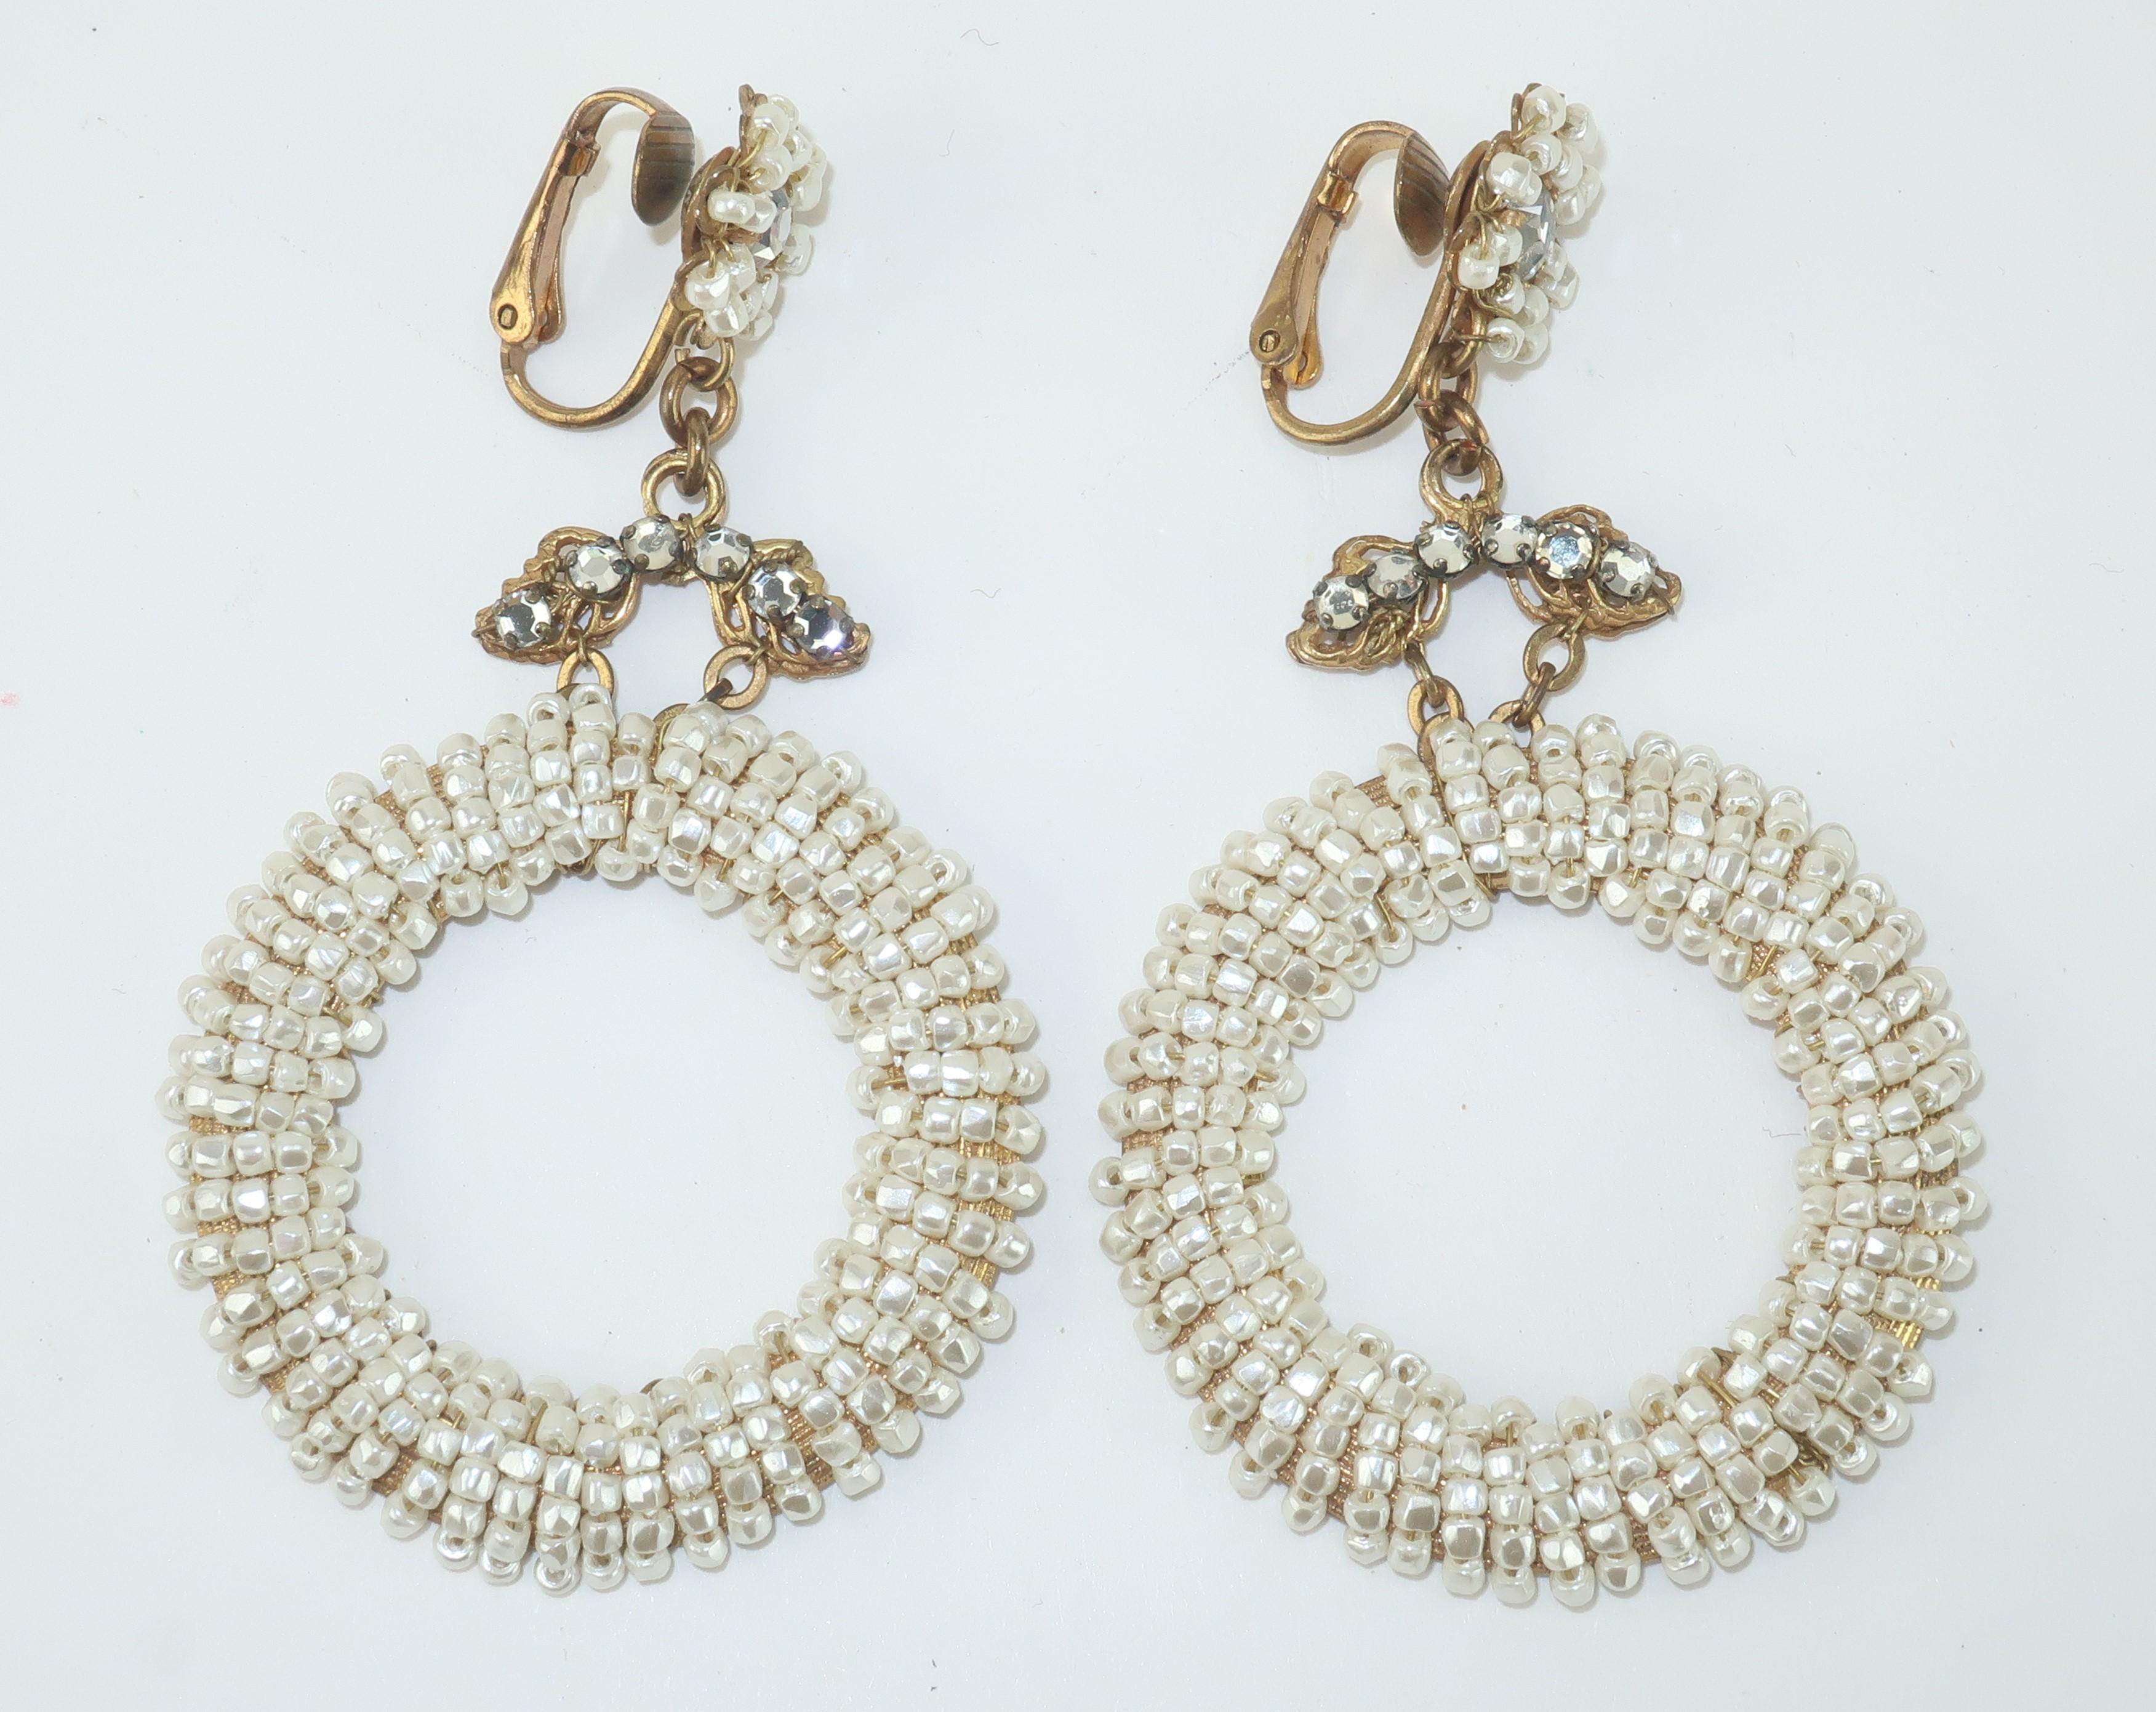 Baroque Revival Miriam Haskell Pearl & Crystal Rhinestone Hoop Earrings, C.1960 For Sale